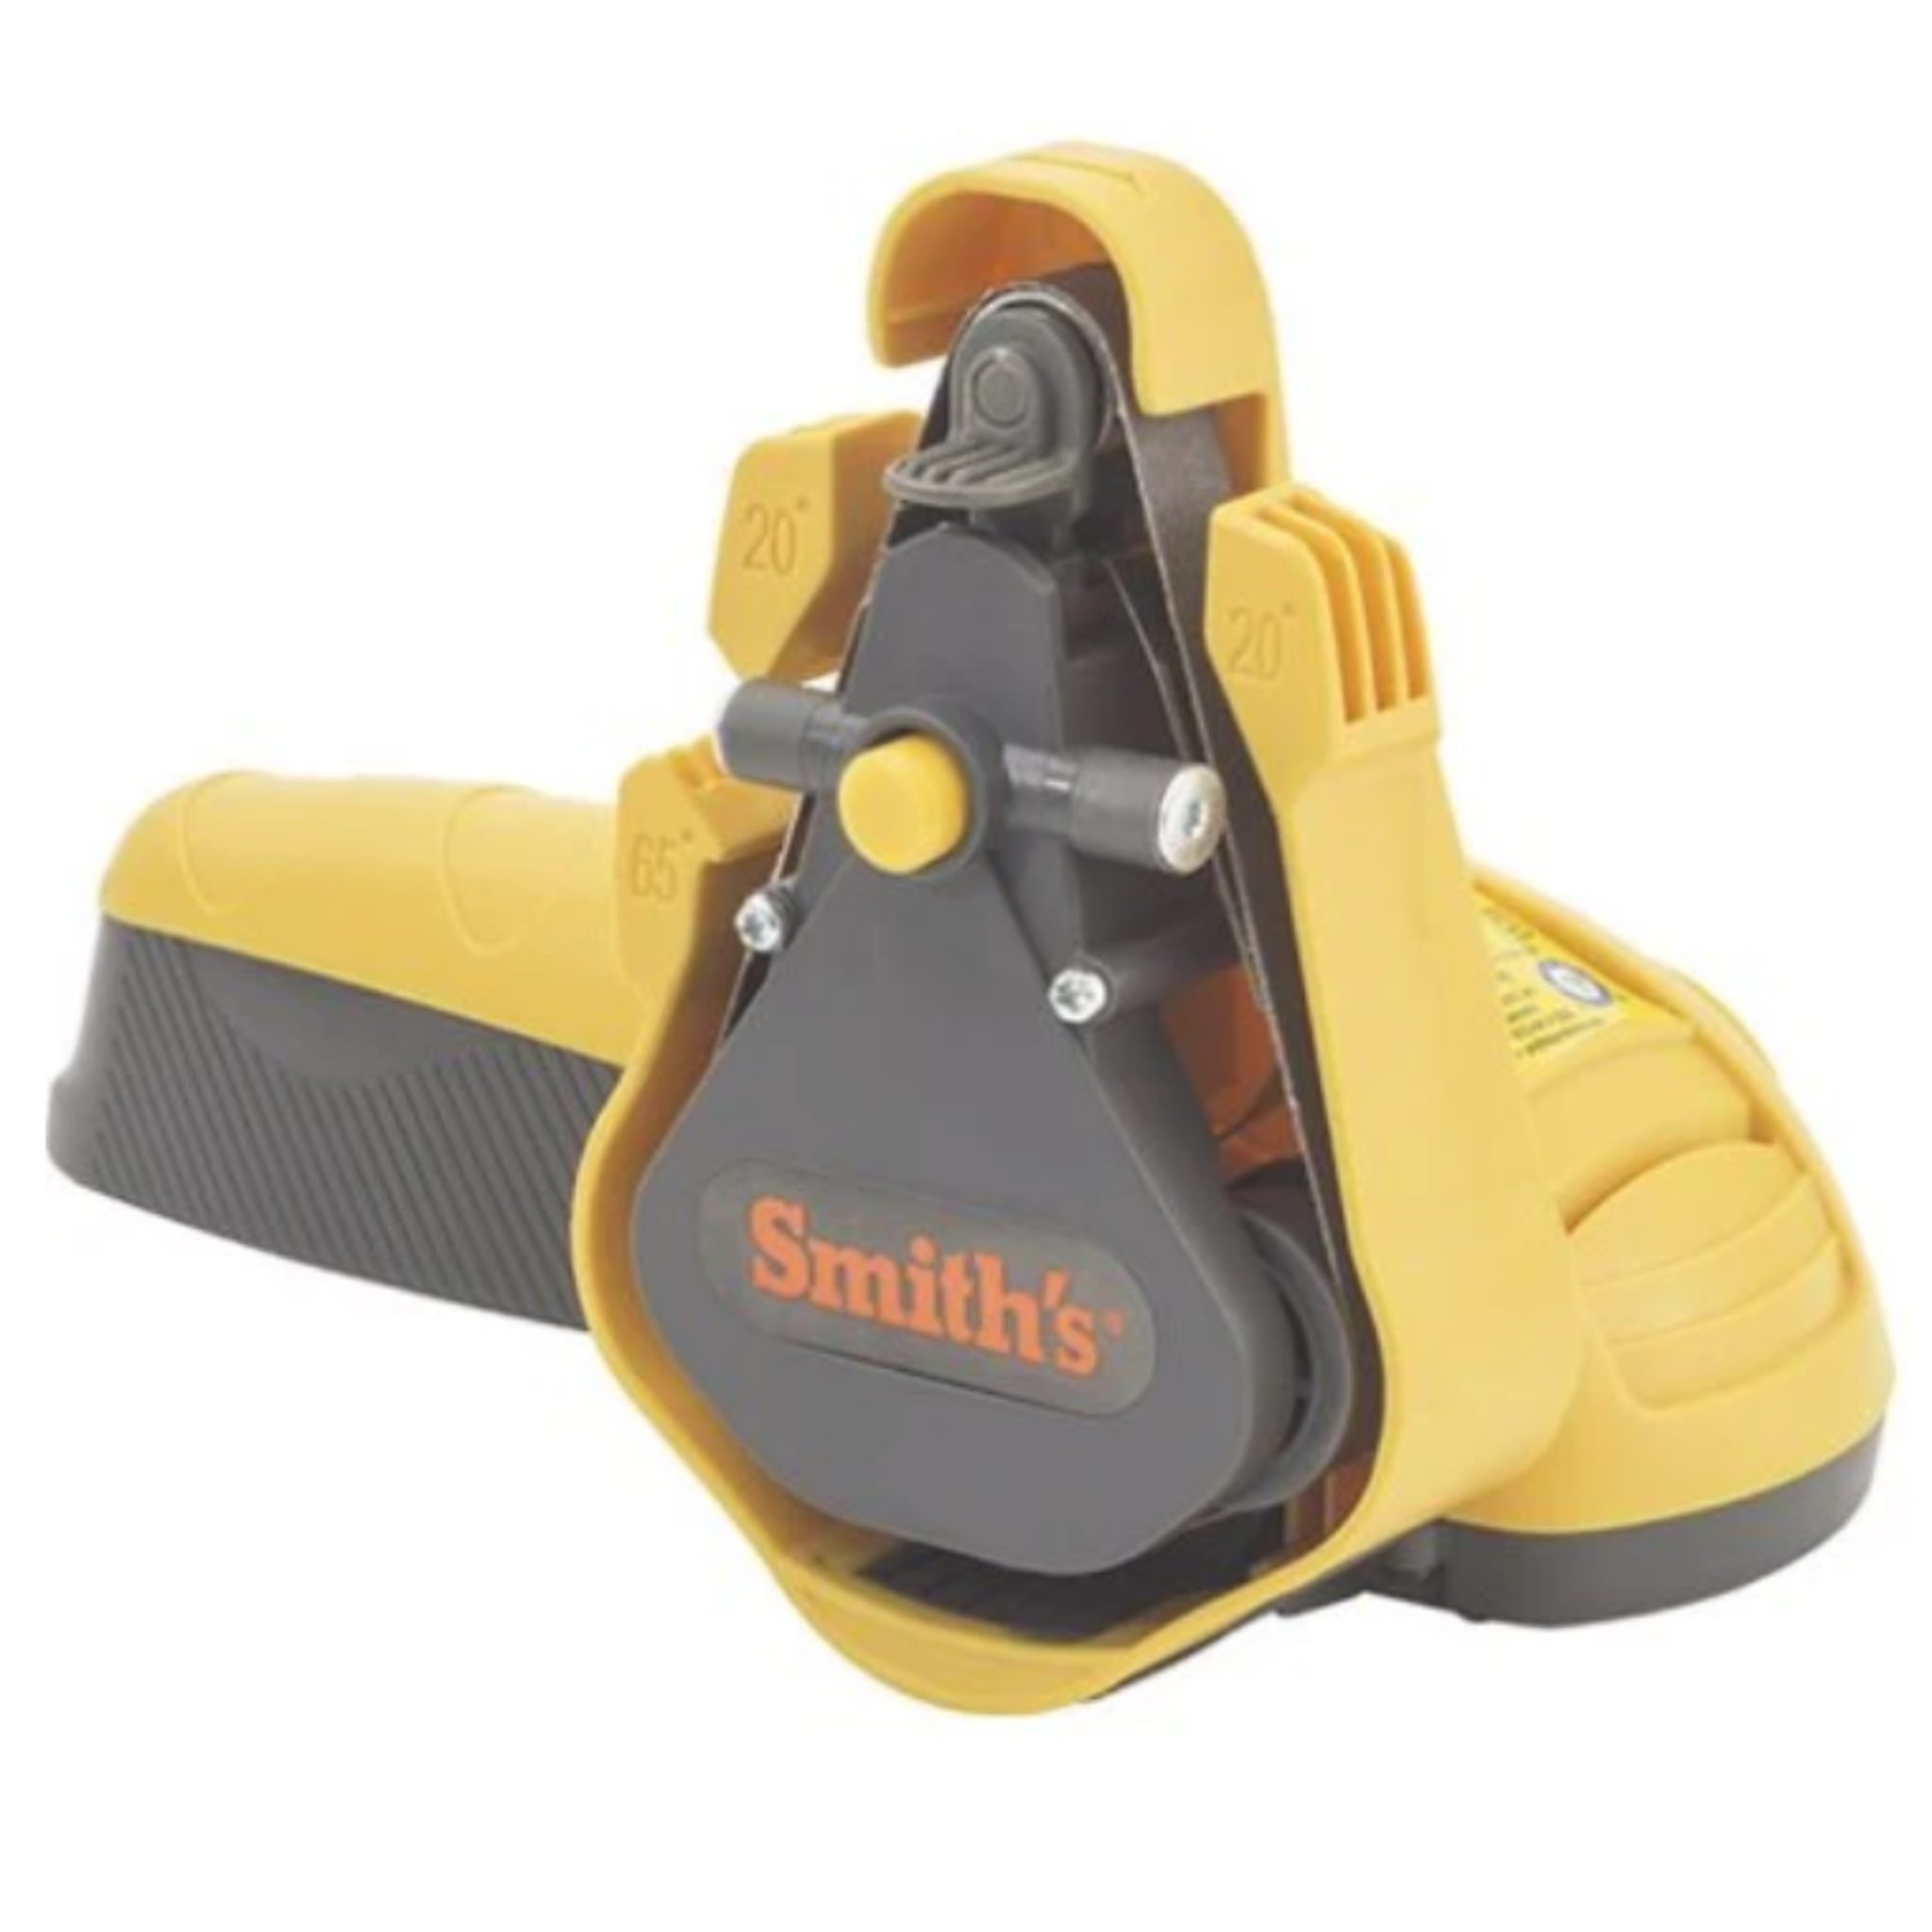 L'affûteuse électrique Smith's pour couteaux et ciseaux, conçue pour rendre l'affûtage facile et convivial. Profitez des 3 bandes abrasives (fine, moyenne et épaisse) incluses dans l'aiguiseur de couteaux et de ciseaux Smith's.  Couleur jaune et grise avec logo Smith's de couleur orange.